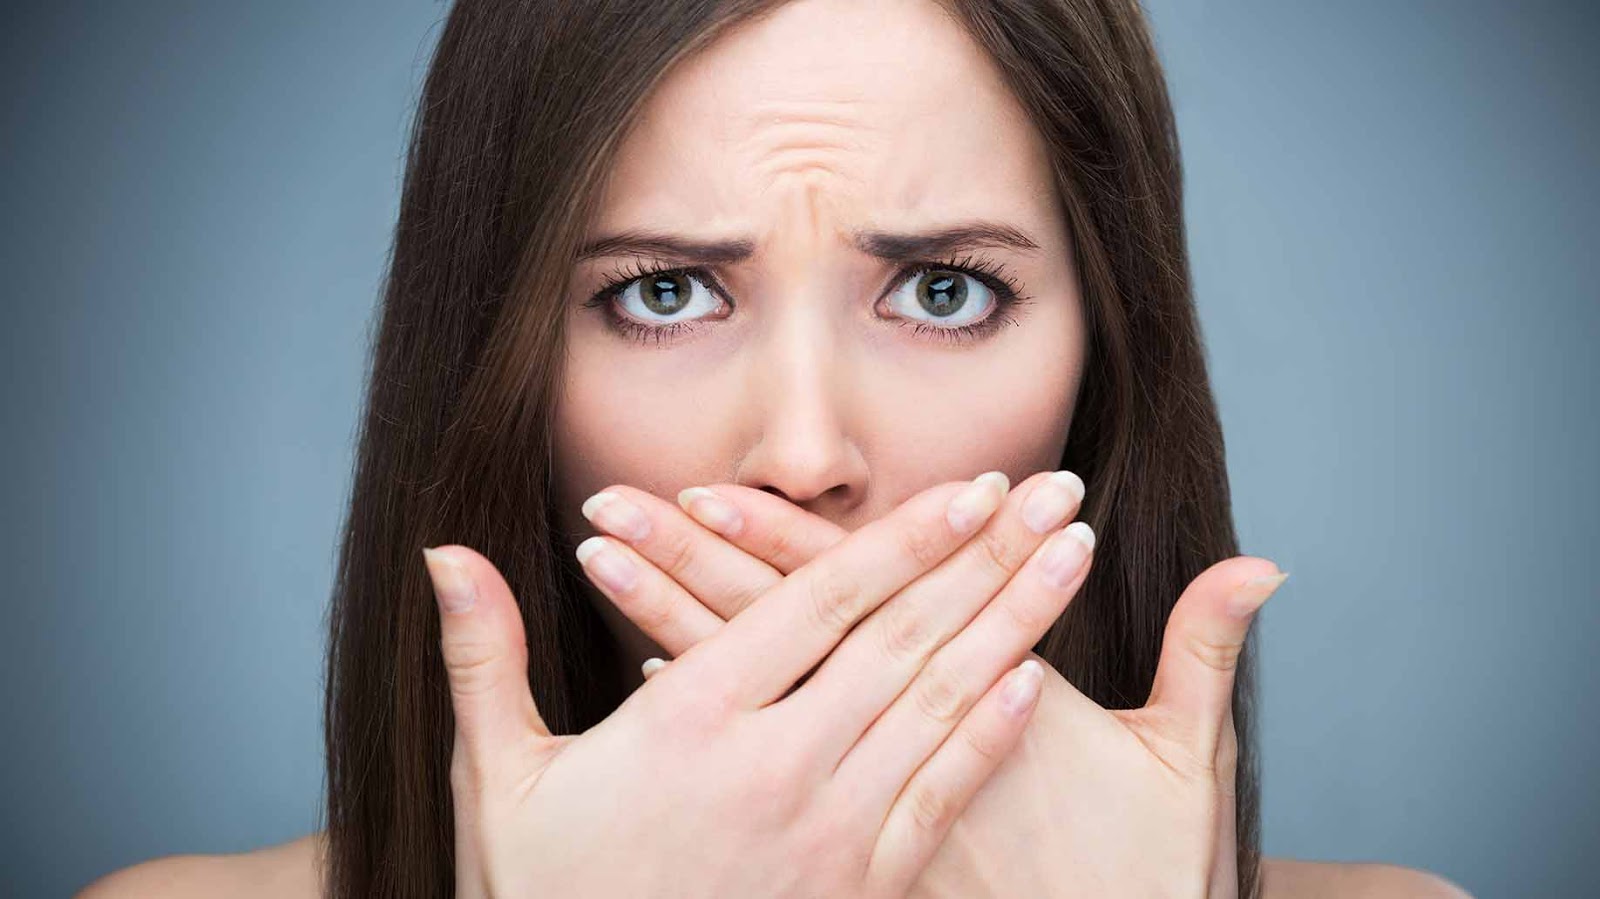 Hôi miệng có thể liên quan đến nhiều vấn đề sức khỏe khác chứ không chỉ là răng miệng (Ảnh: Shutterstock)